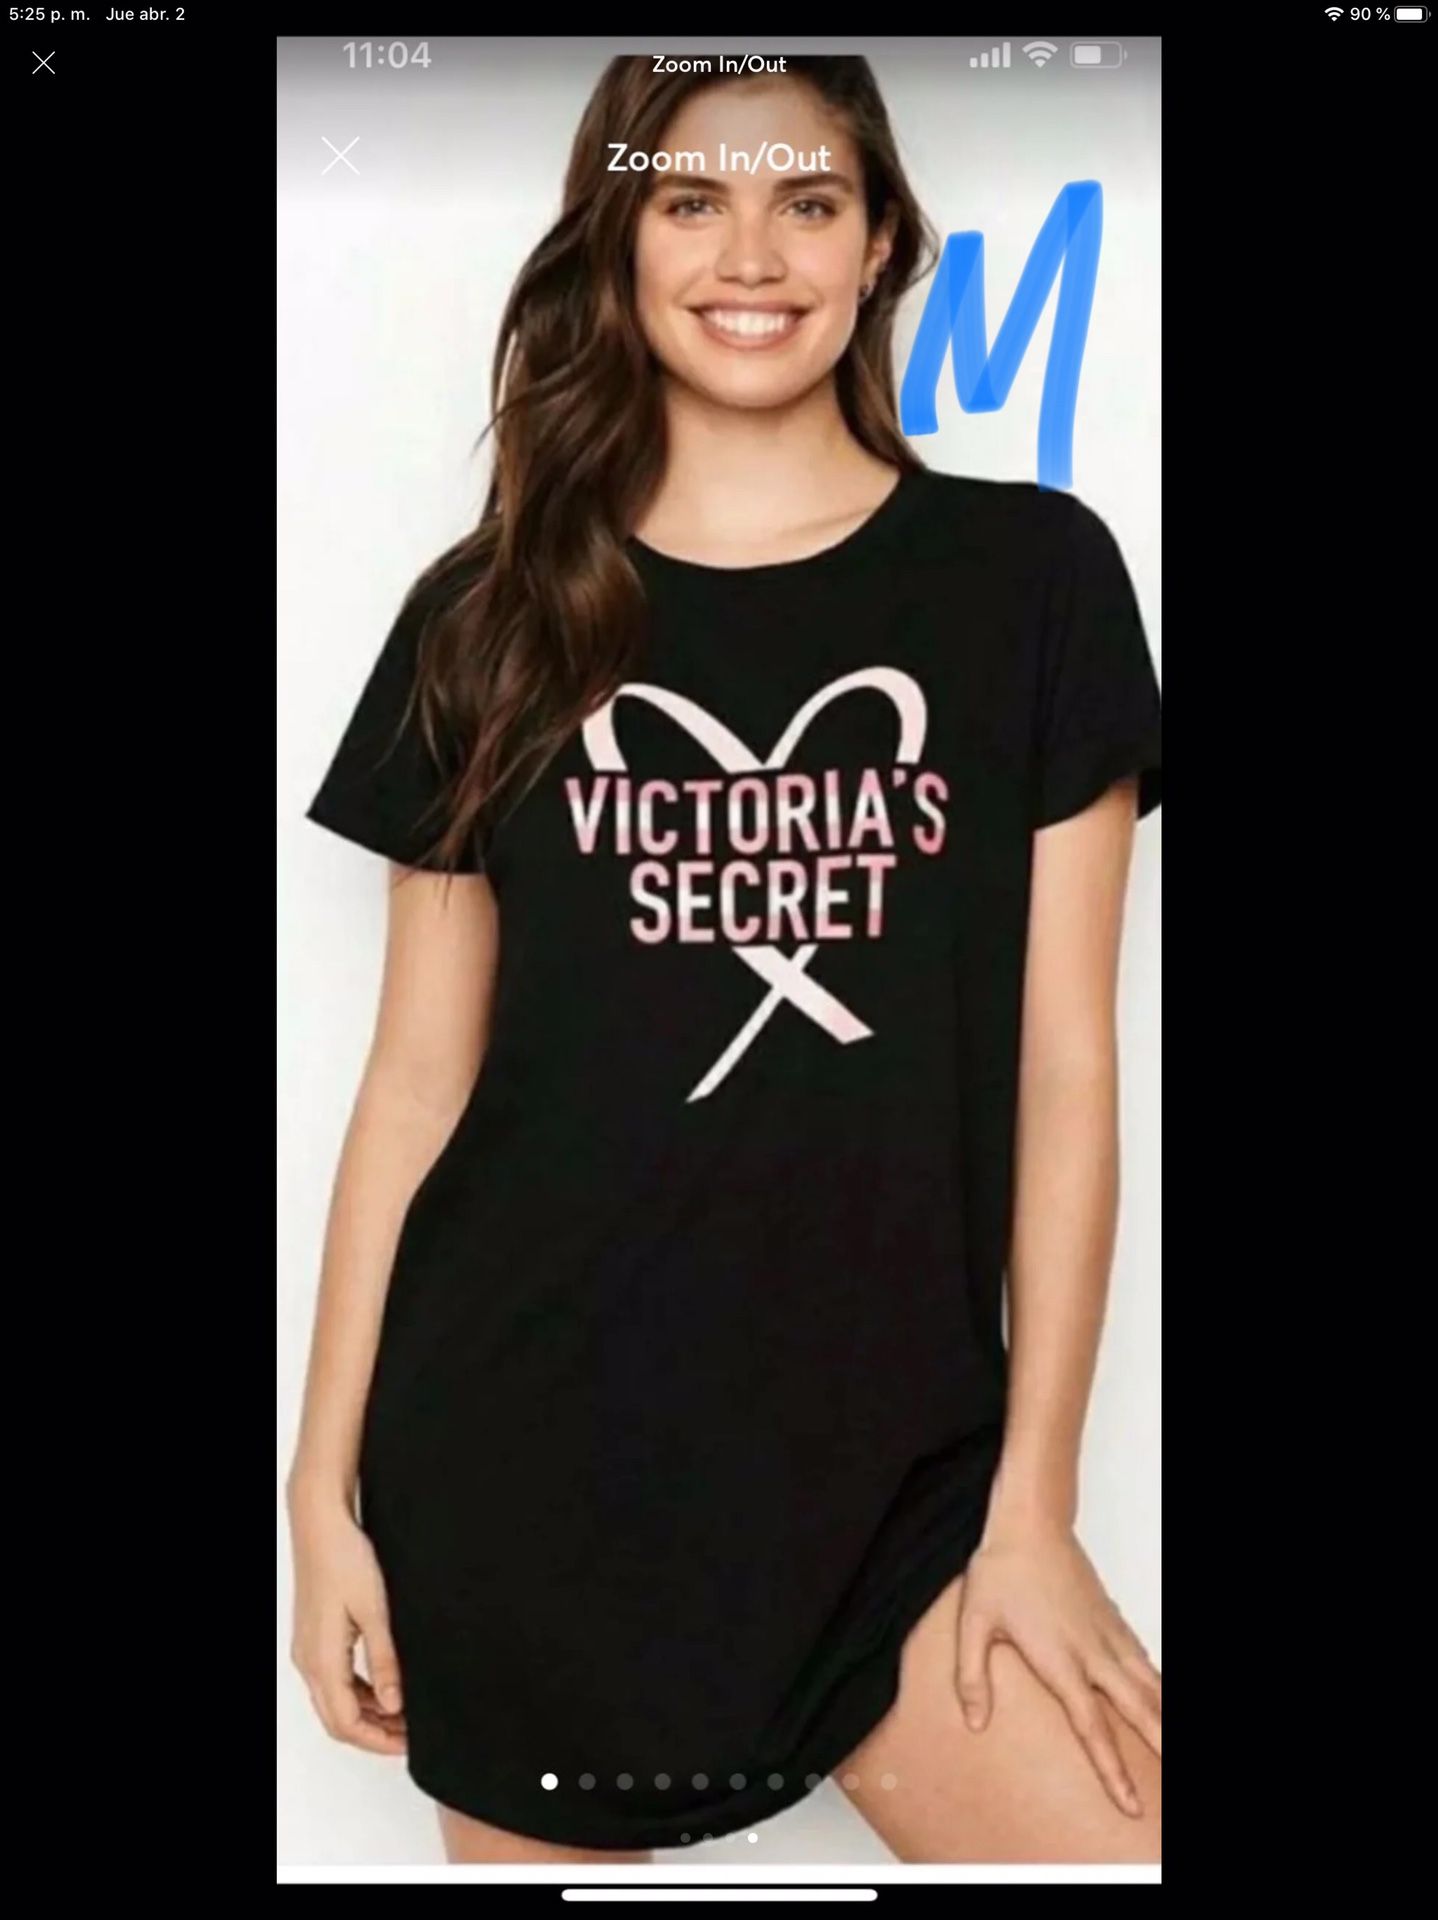 NEW T-shirt camisón Victoria secret size medium ❤️❤️❤️❤️